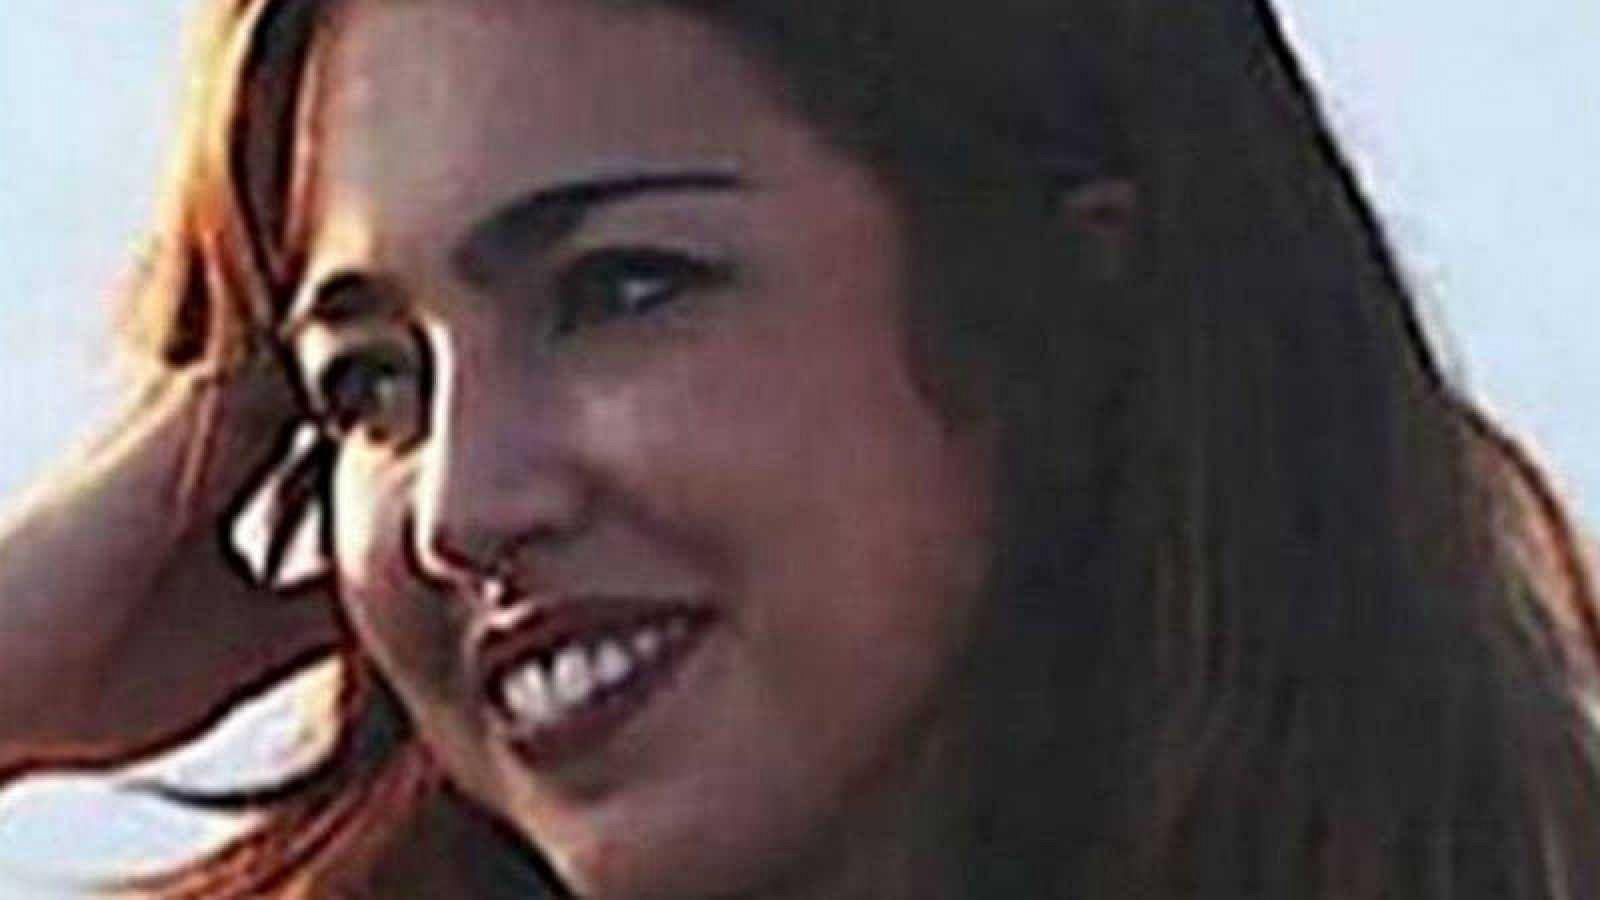 La estudiante española desaparecida en París aparece viva una semana después